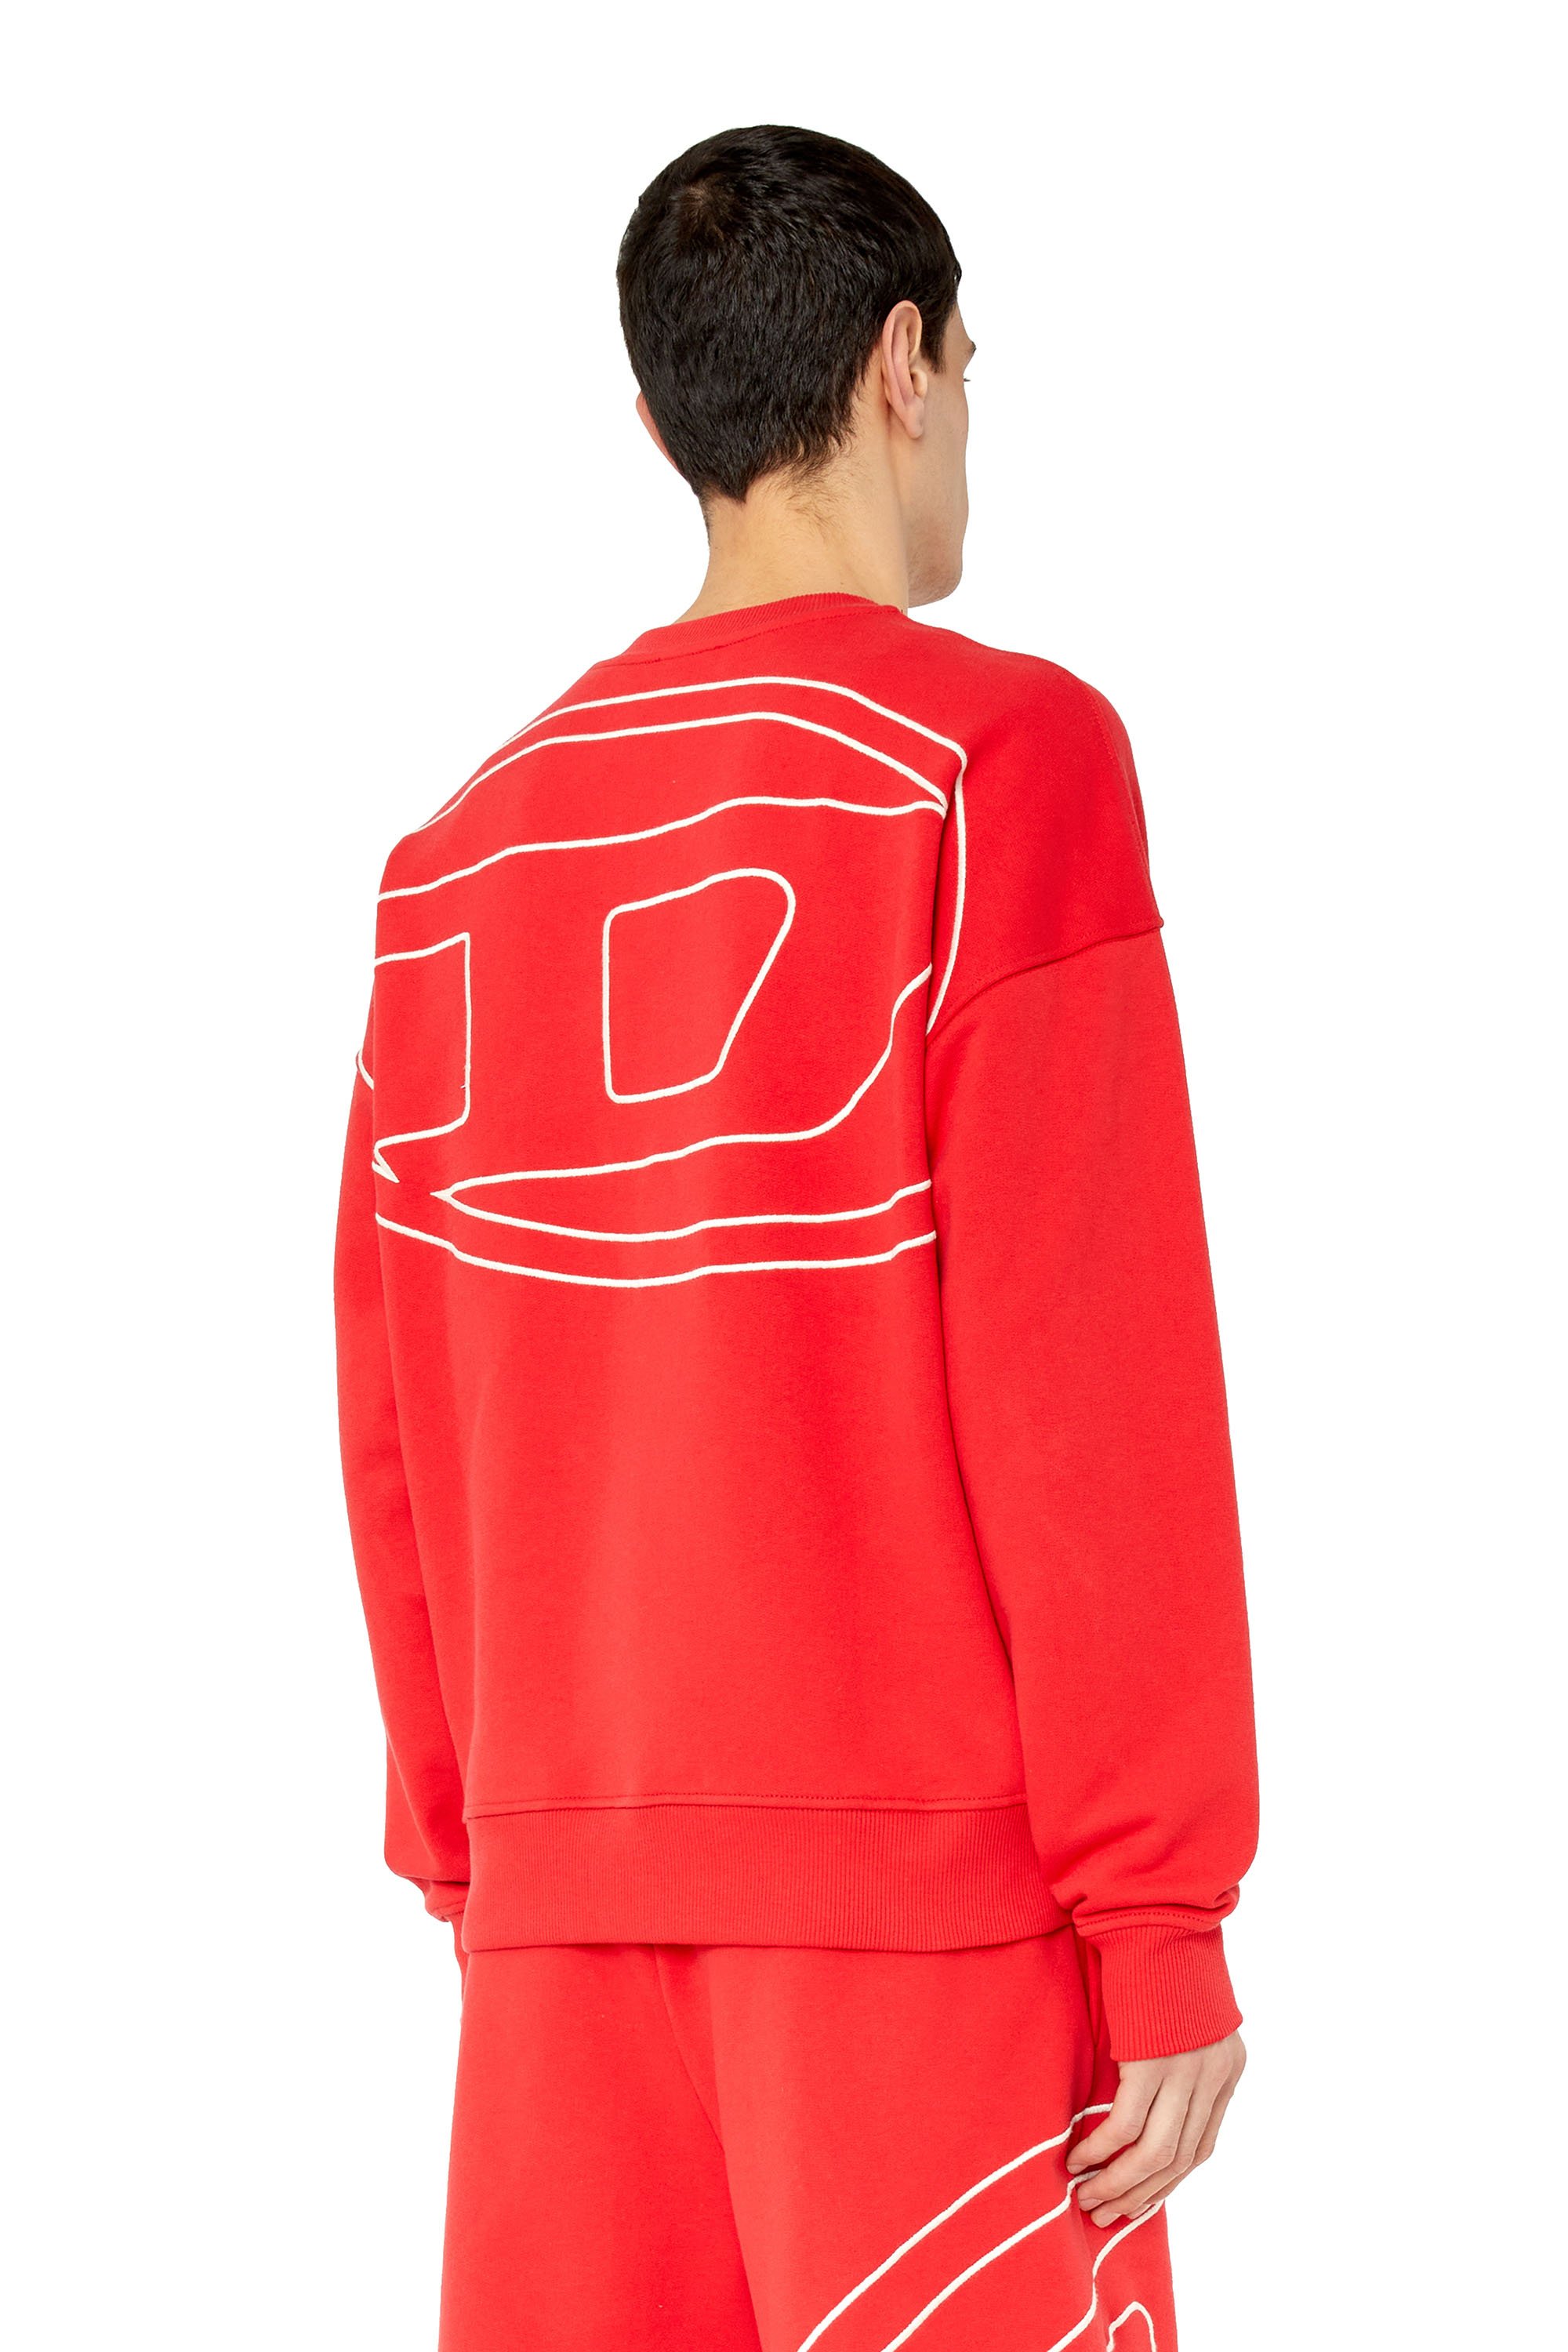 Diesel - Sweatshirt mit Maxi-D-Logo hinten - Sweatshirts - Herren - Rot